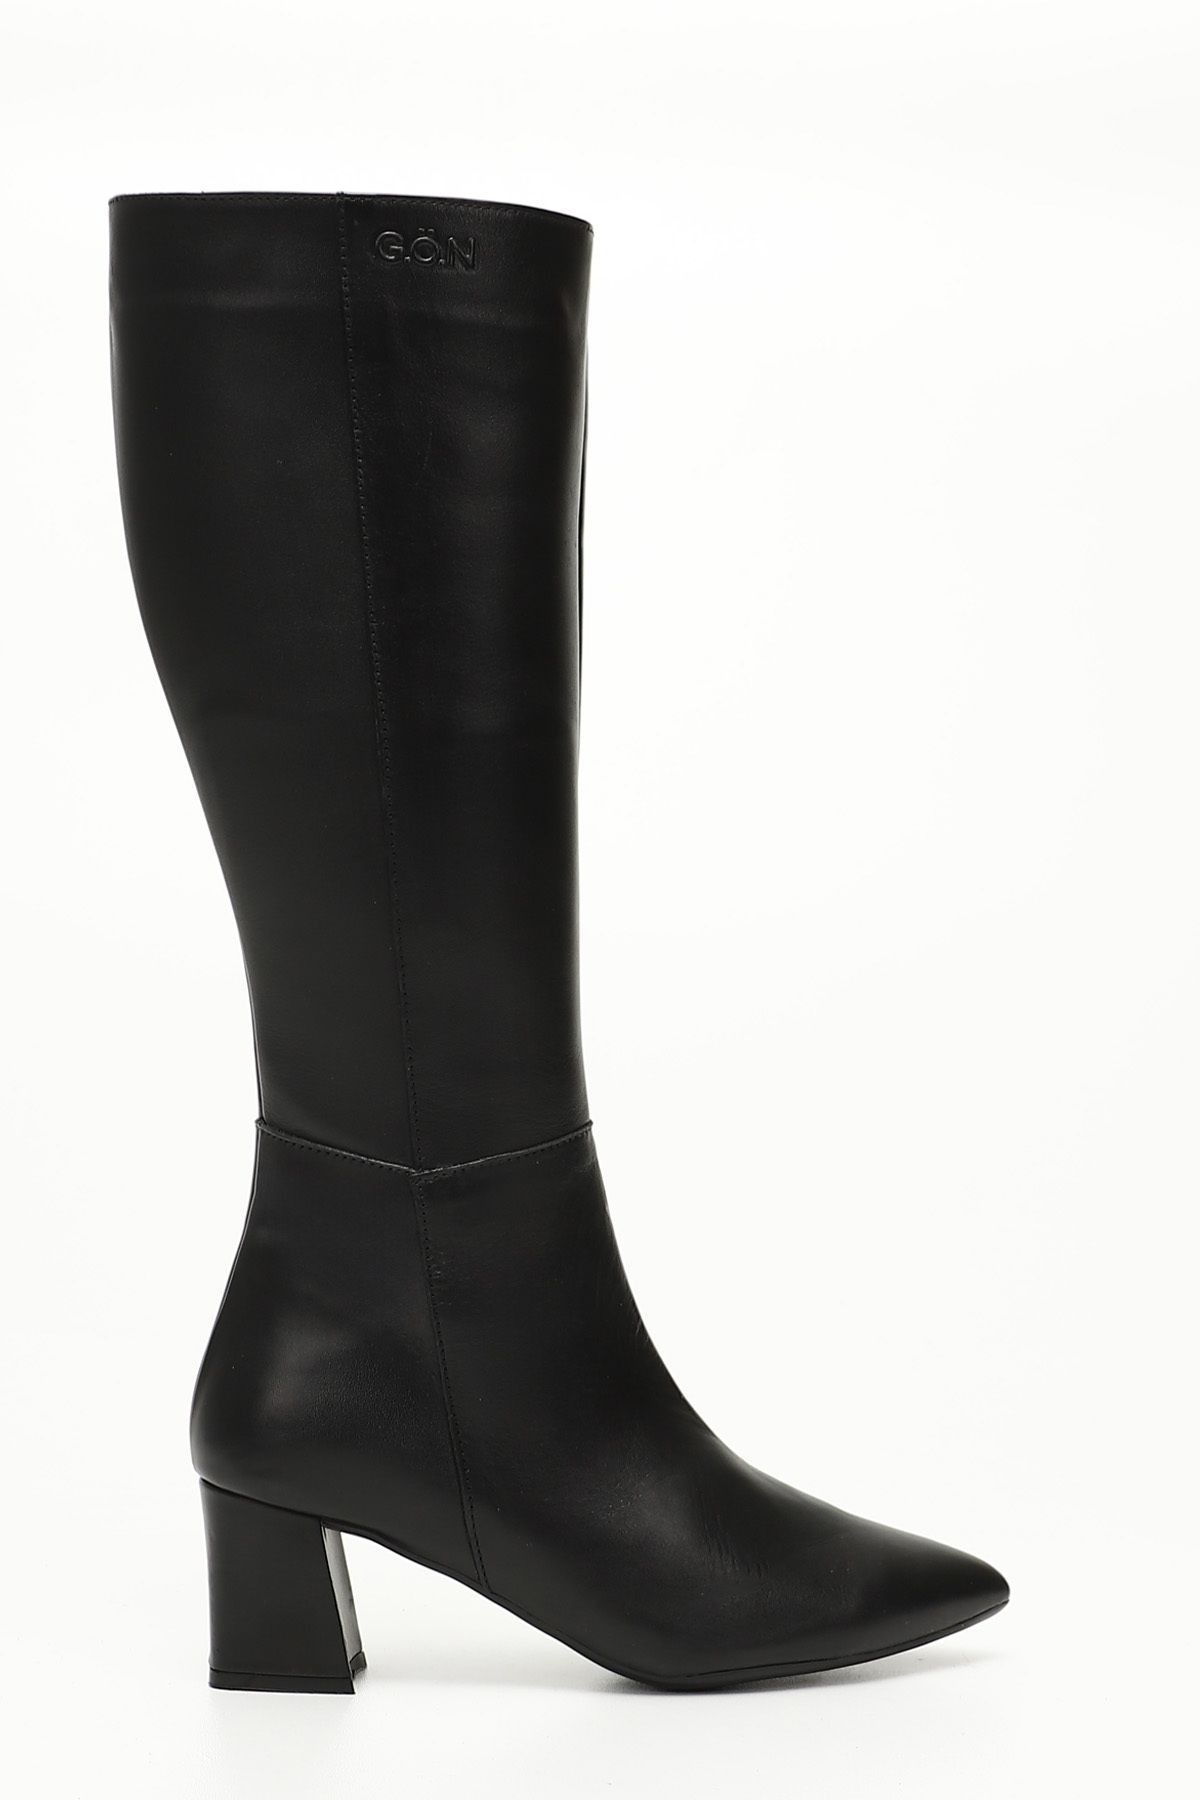 GÖNDERİ(R) Siyah Gön Hakiki Deri Kadın Topuklu Fermuarlı Çizme 44585